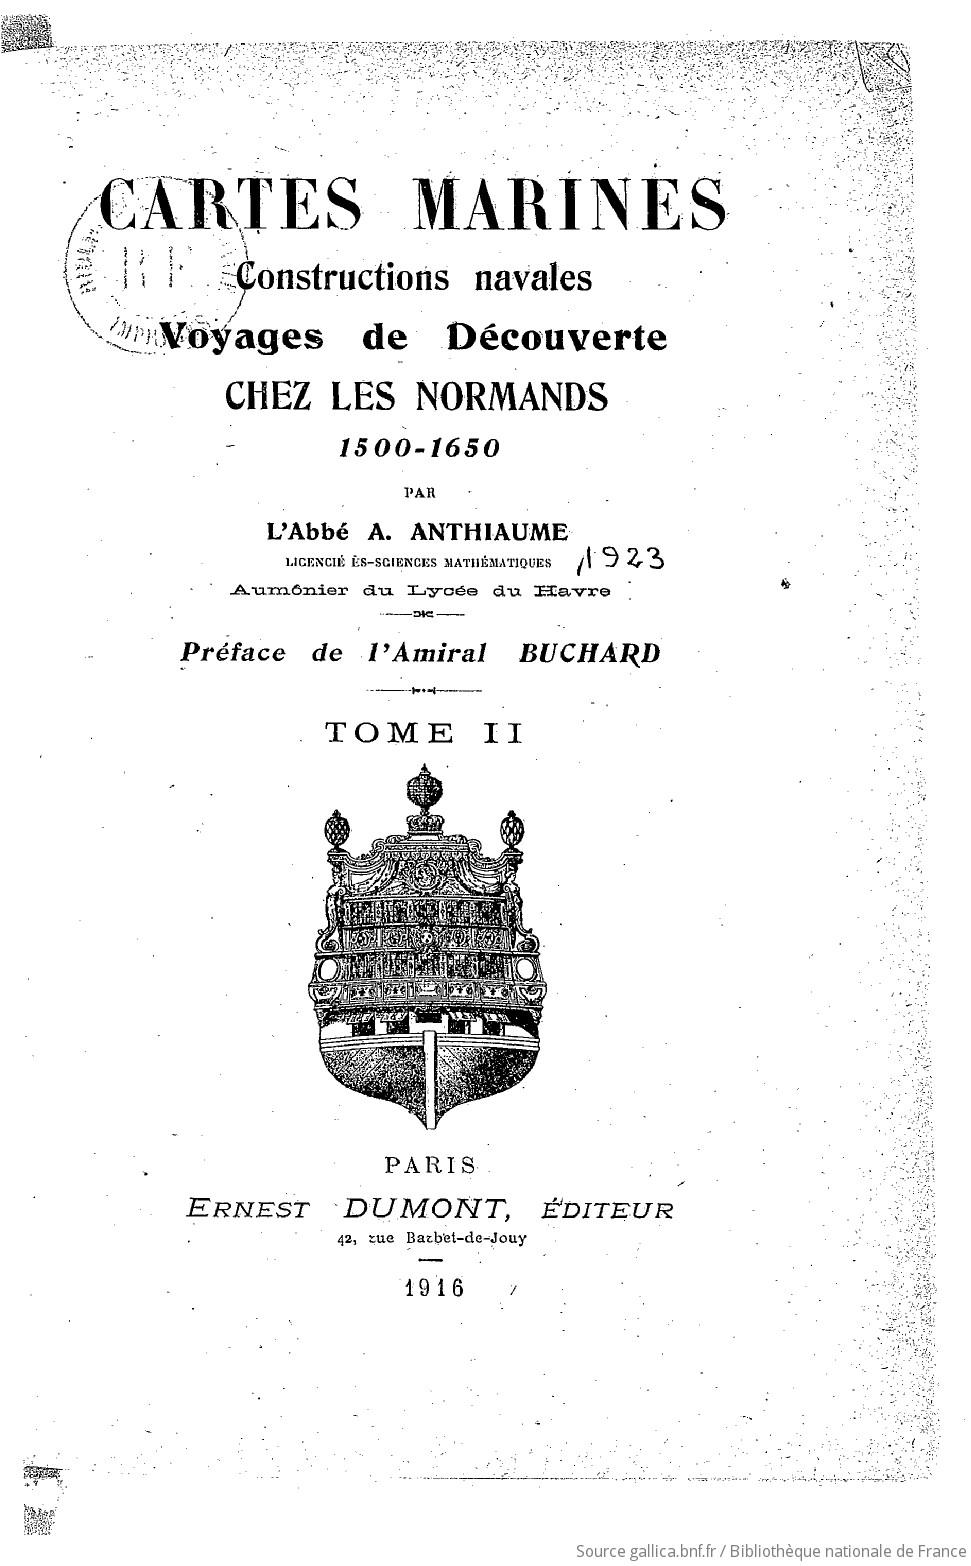 Cartes marines, constructions navales, voyages de découverte chez les Normands, 1500-1650. Tome 2 / par l'abbé A. Anthiaume,... ; préface de l'amiral Buchard...